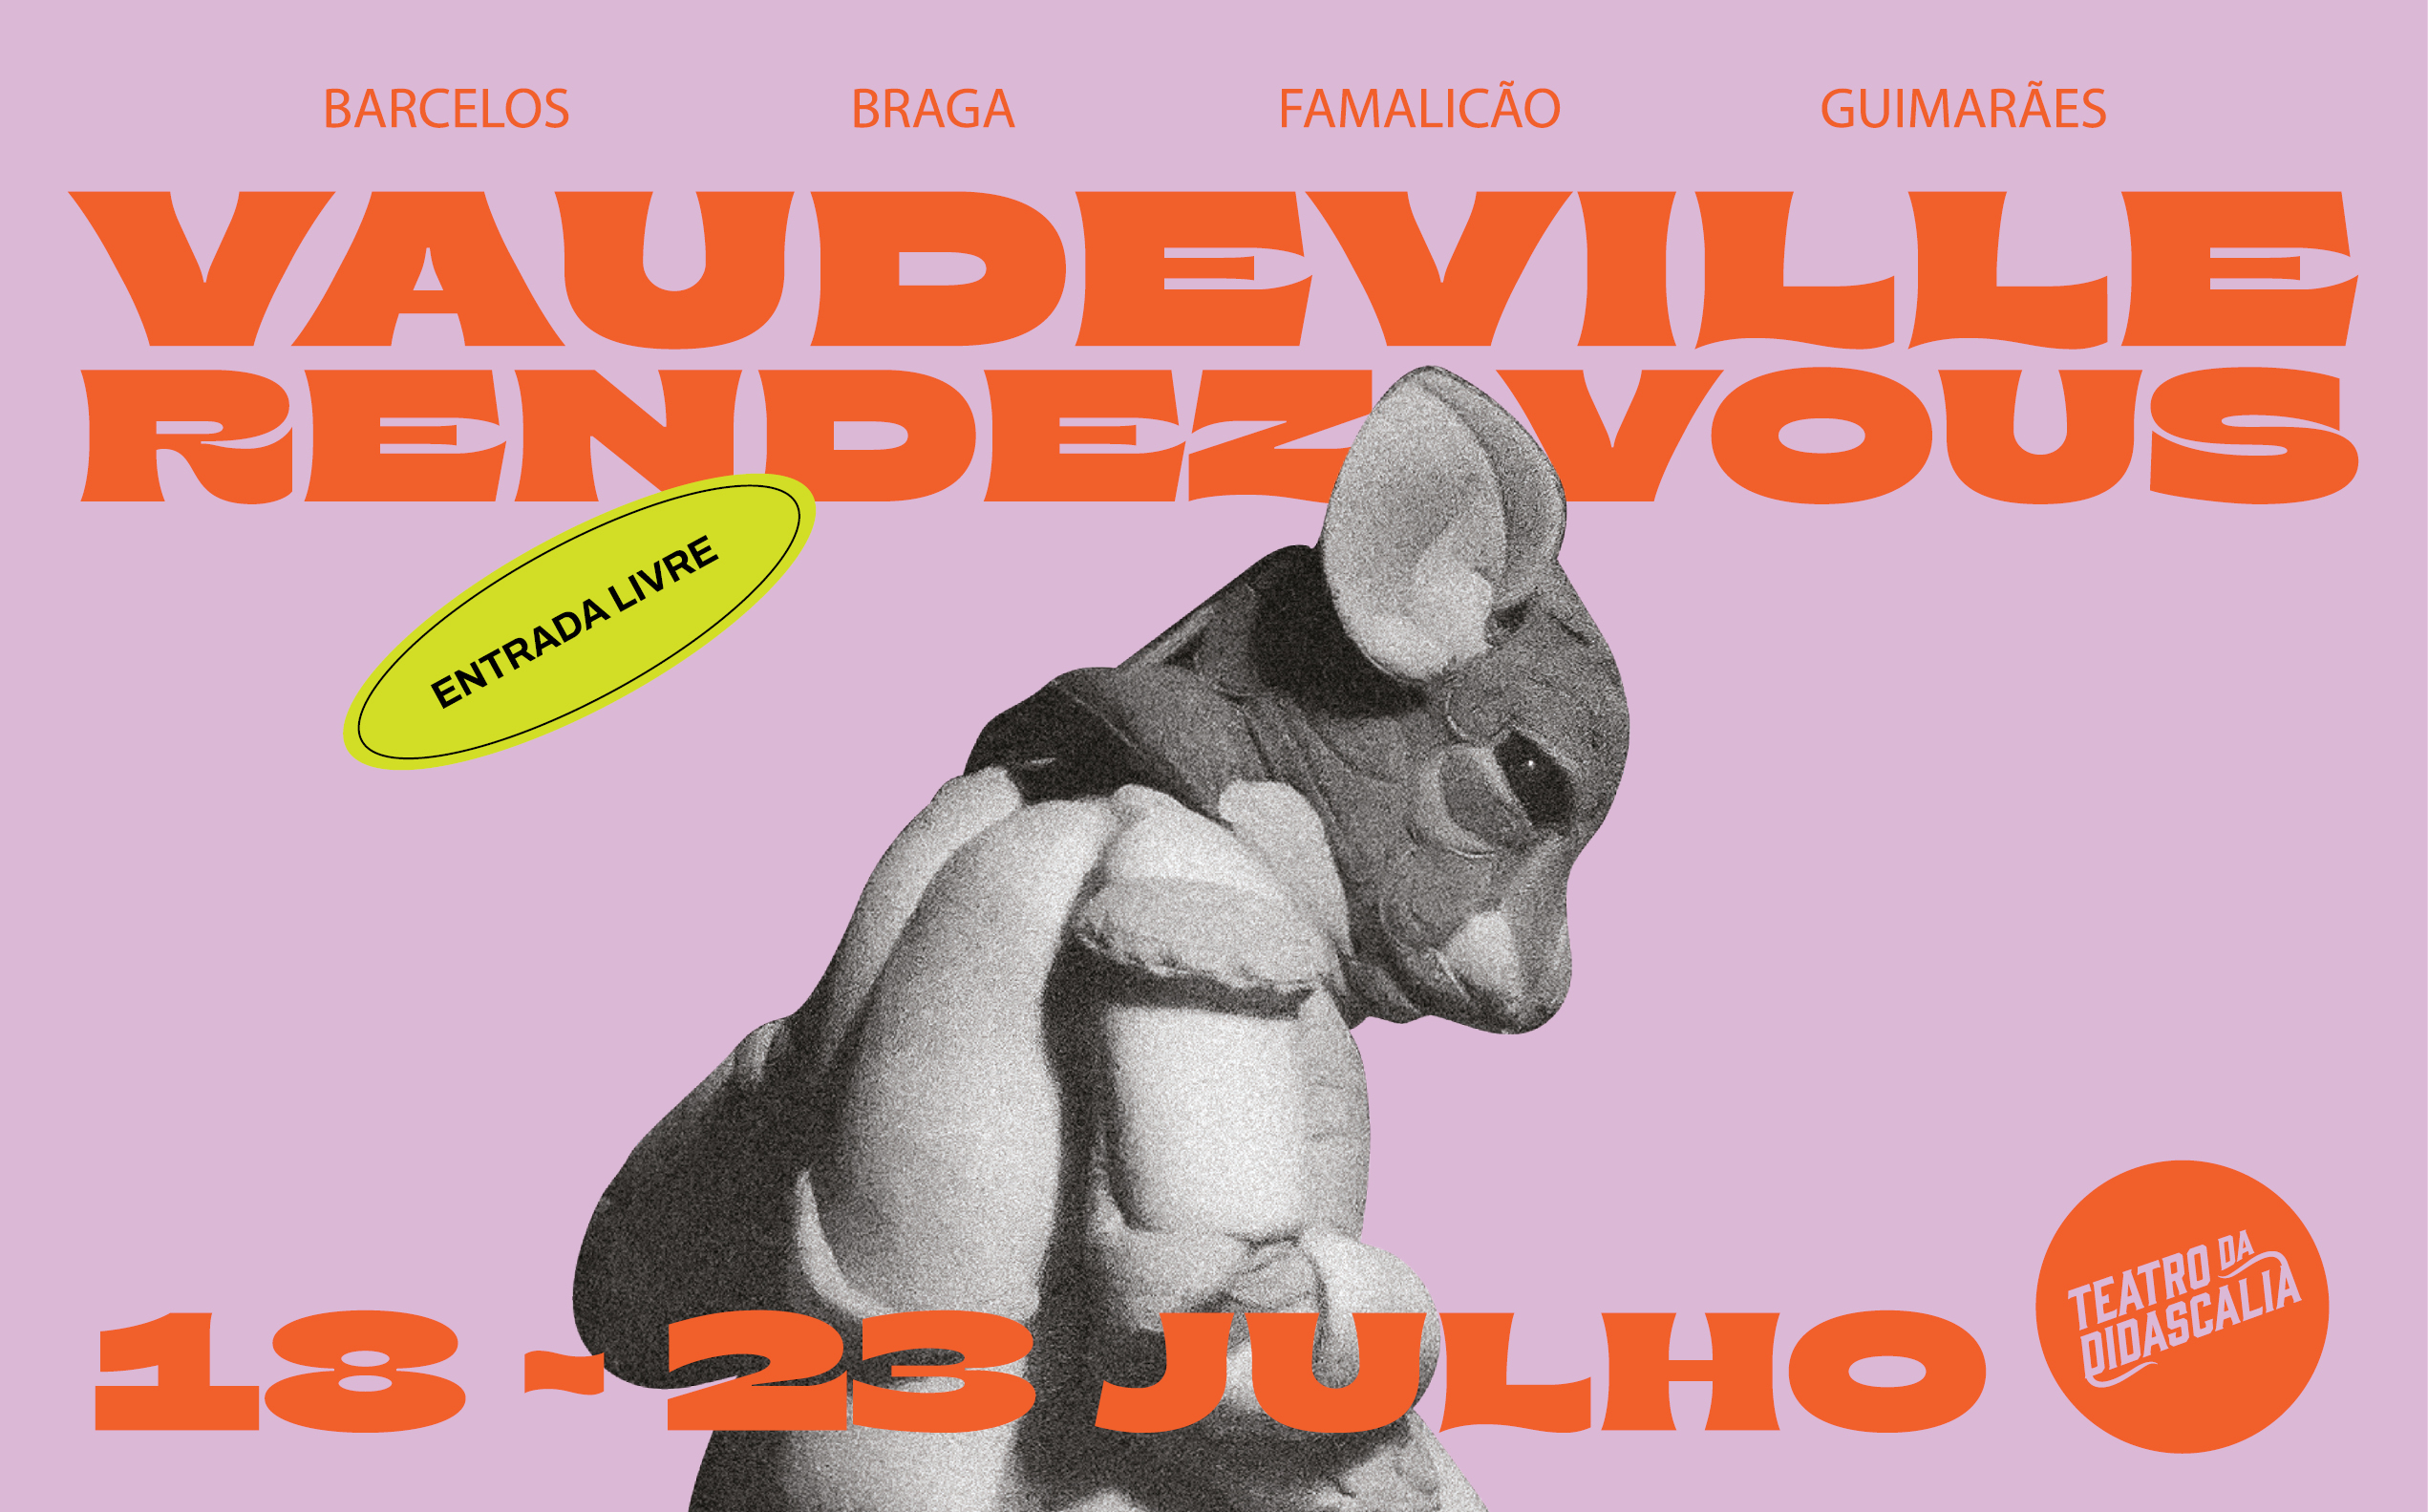 Festival Vaudeville Rendez-Vous em contagem decrescente